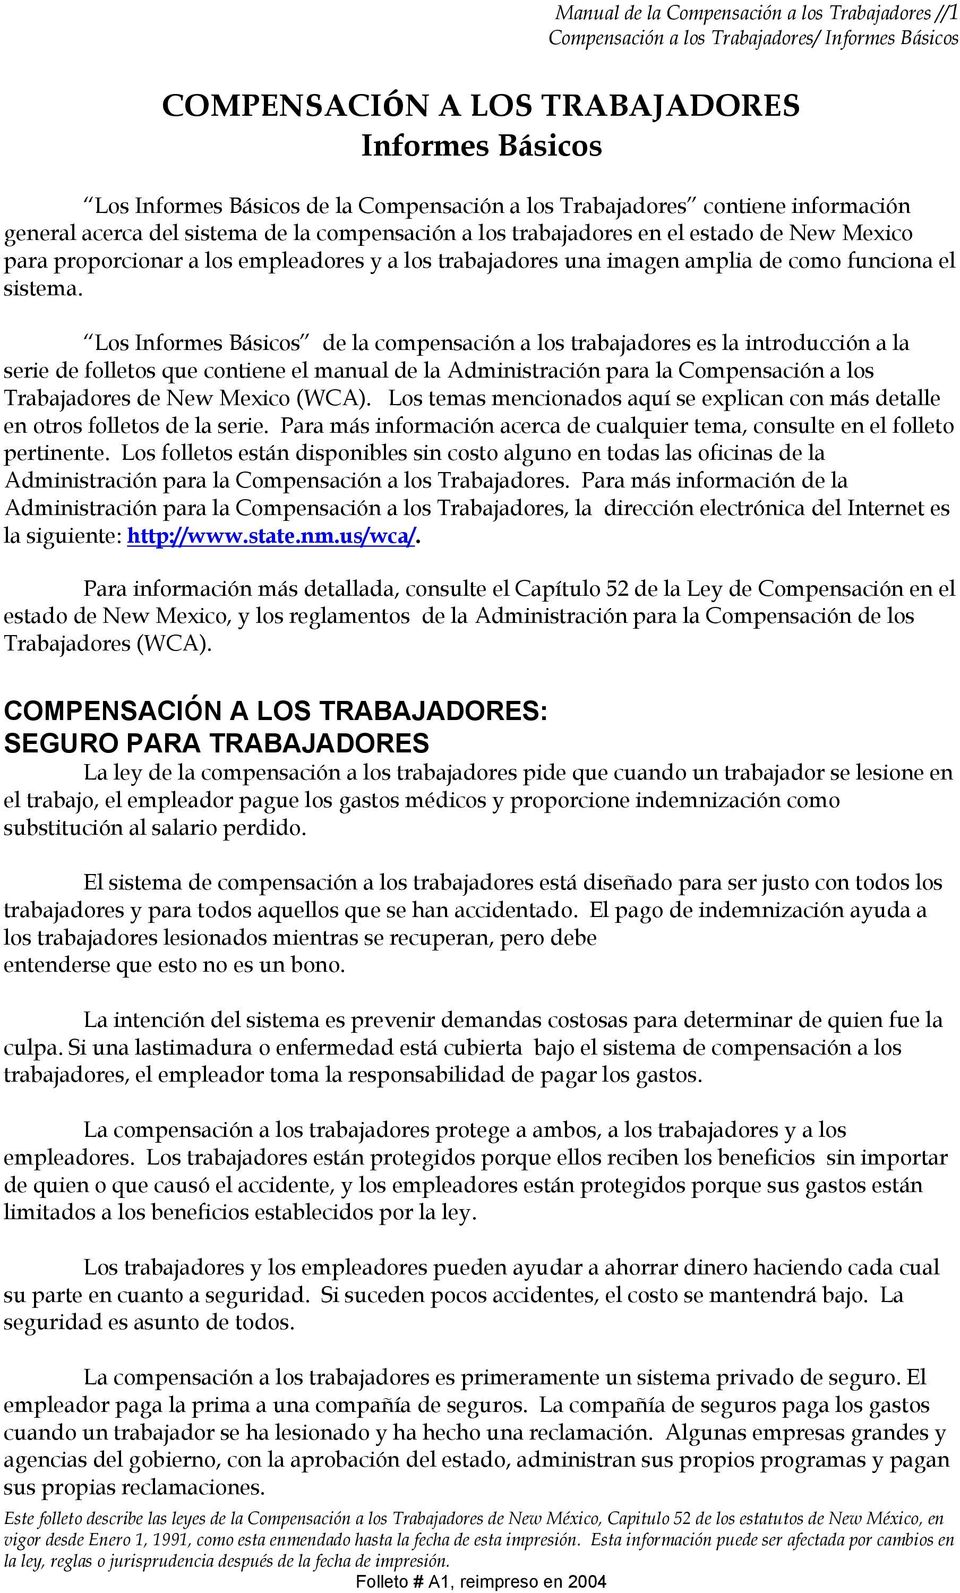 Los Informes Básicos de la compensación a los trabajadores es la introducción a la serie de folletos que contiene el manual de la Administración para la Compensación a los Trabajadores de New Mexico